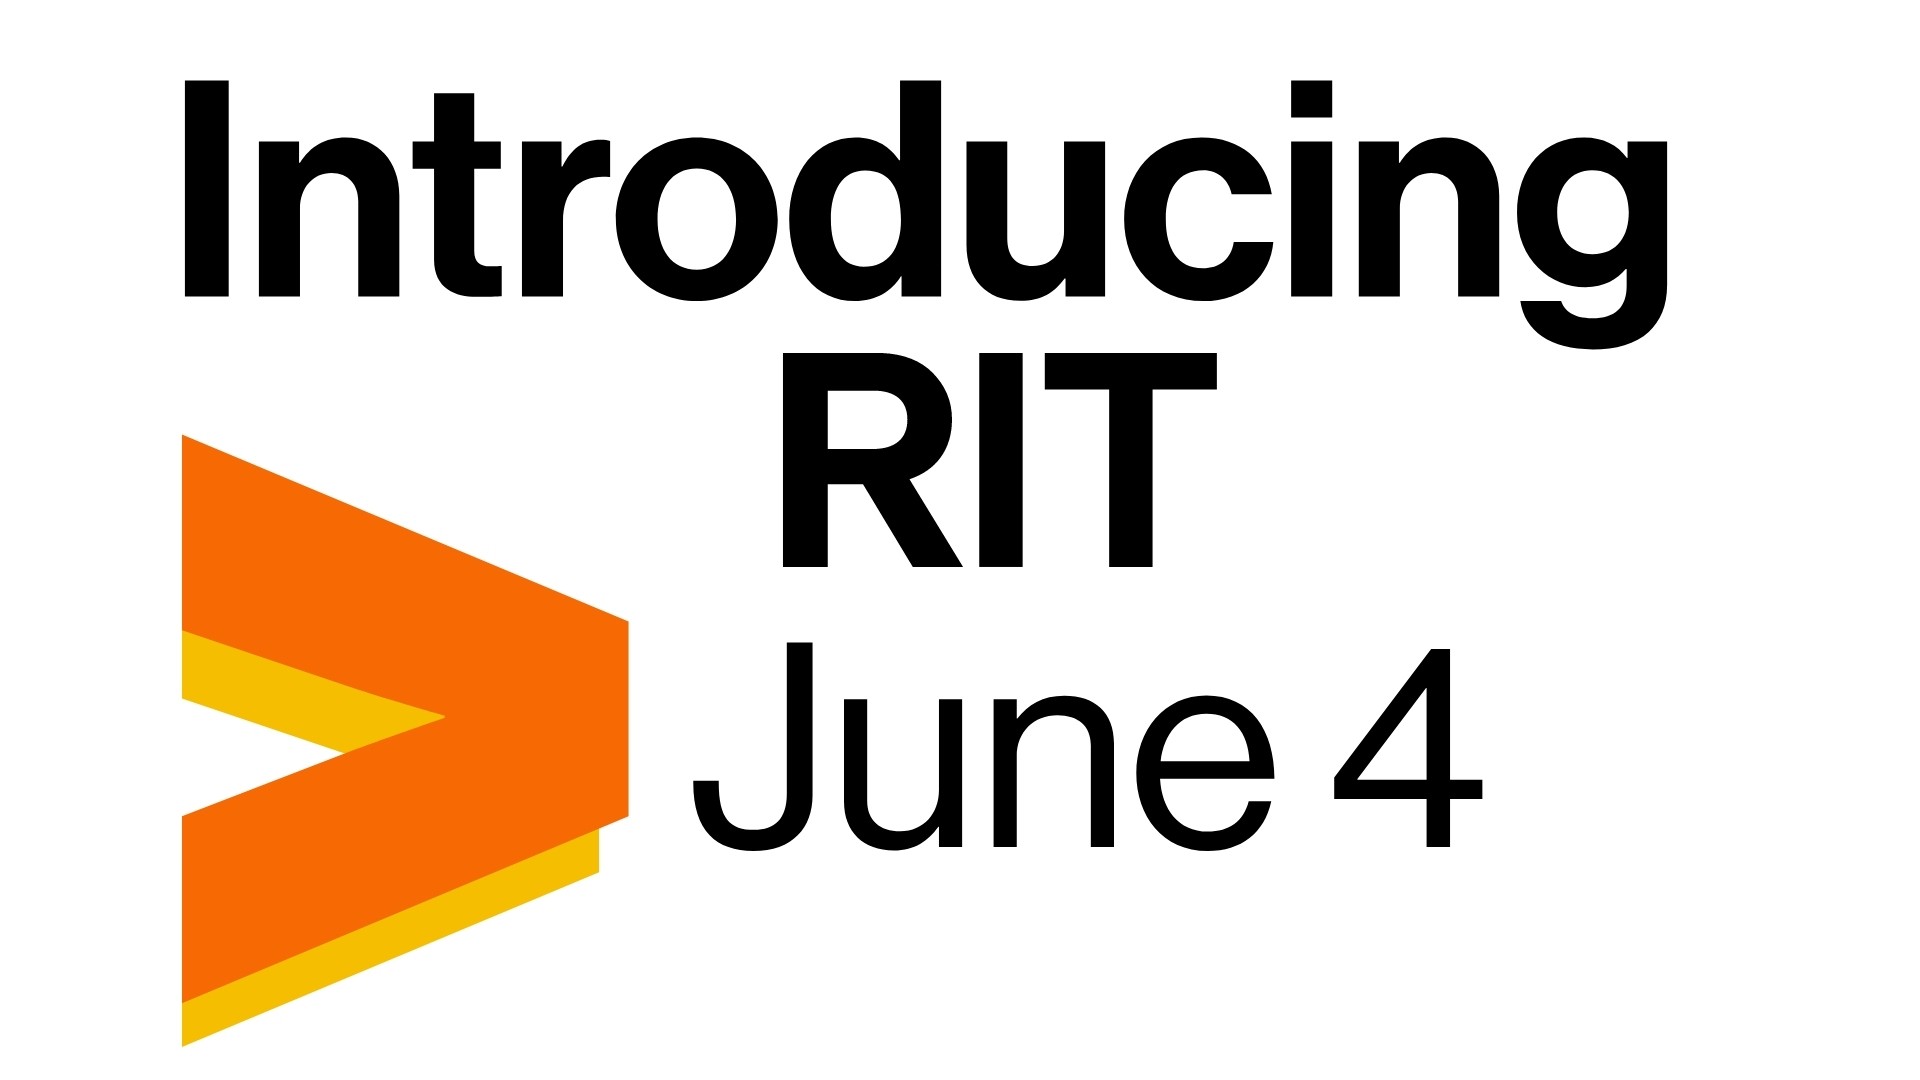 "Introducing RIT June 4"